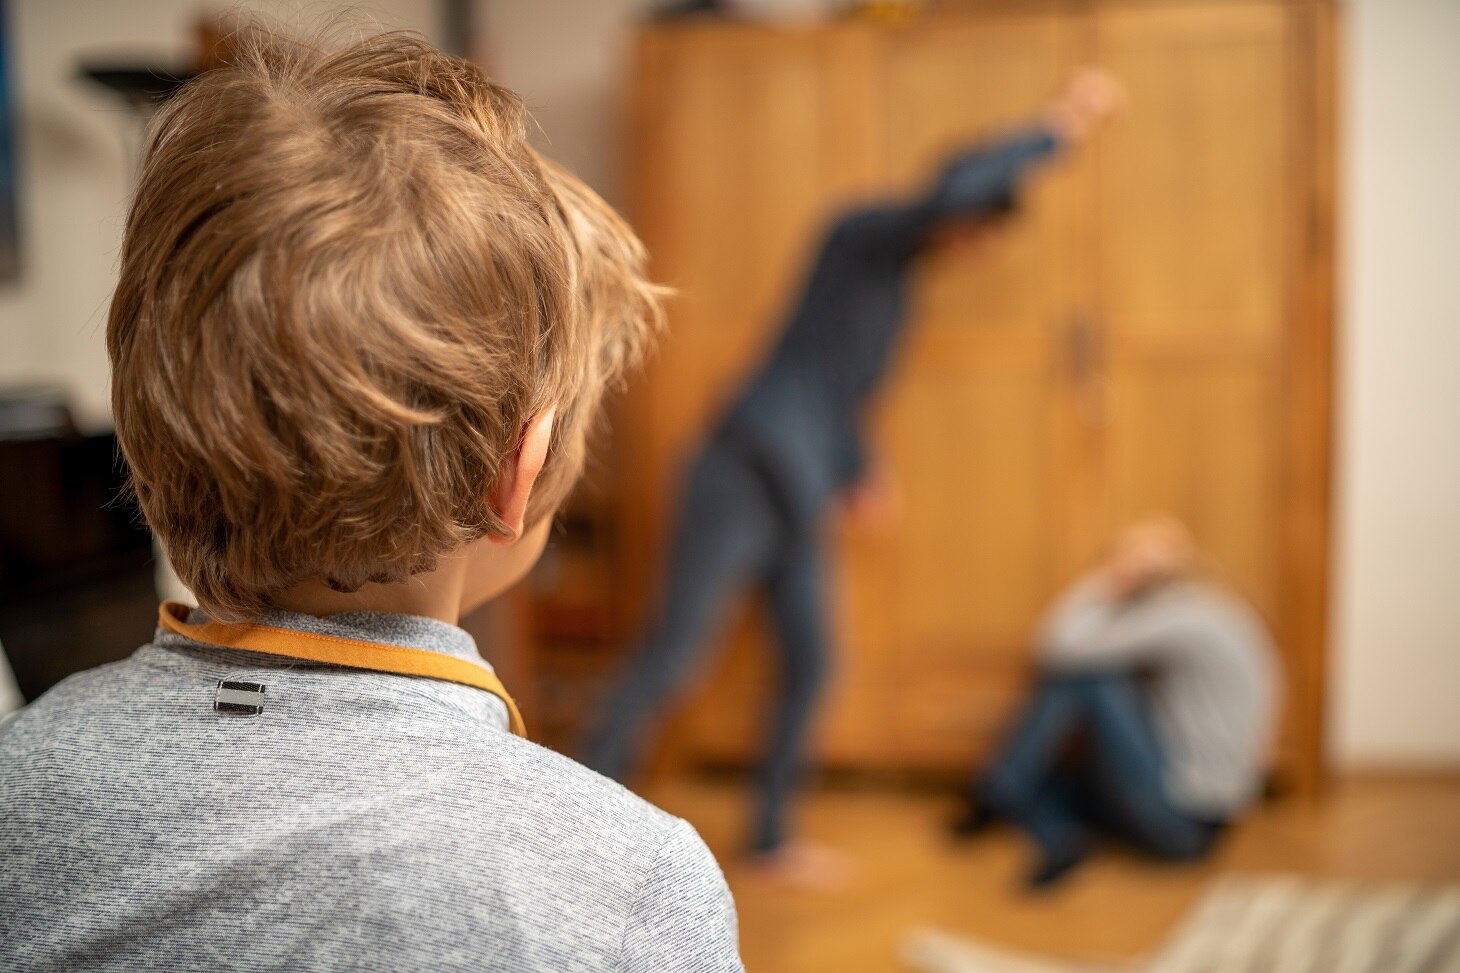 Szene häusliche Gewalt, Kind sieht wie der Vater die Mutter schlägt